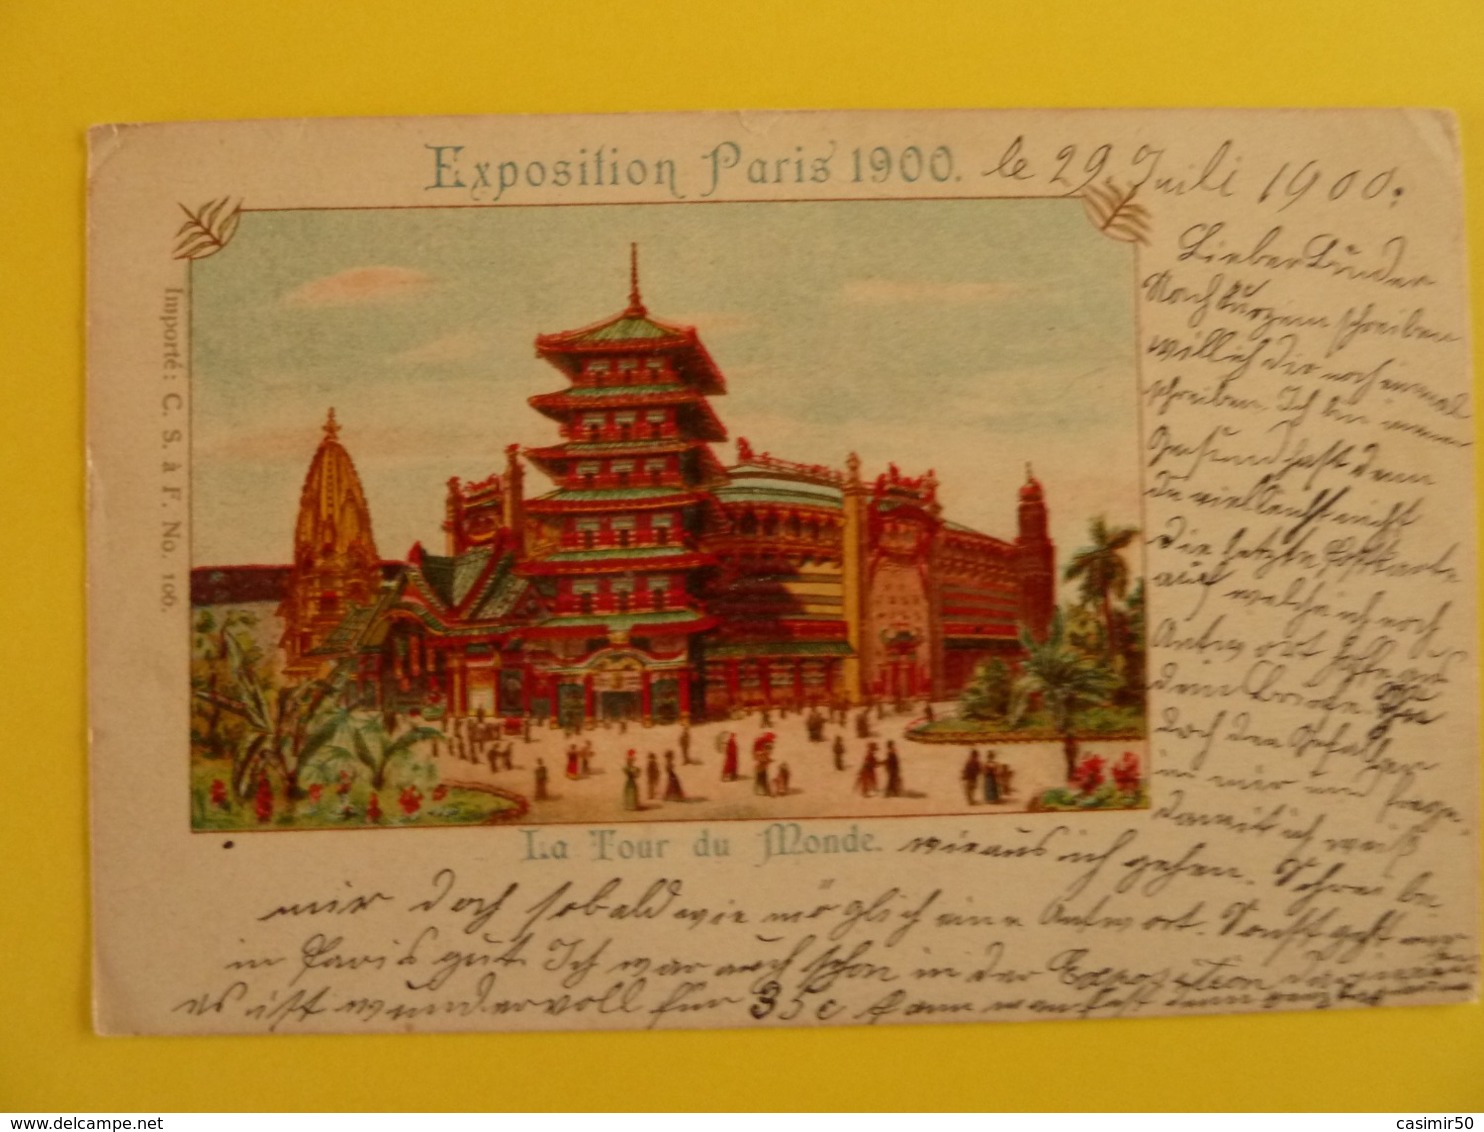 EXPOSITION PARIS 1900 LA TOUR DU MONDE - Expositions